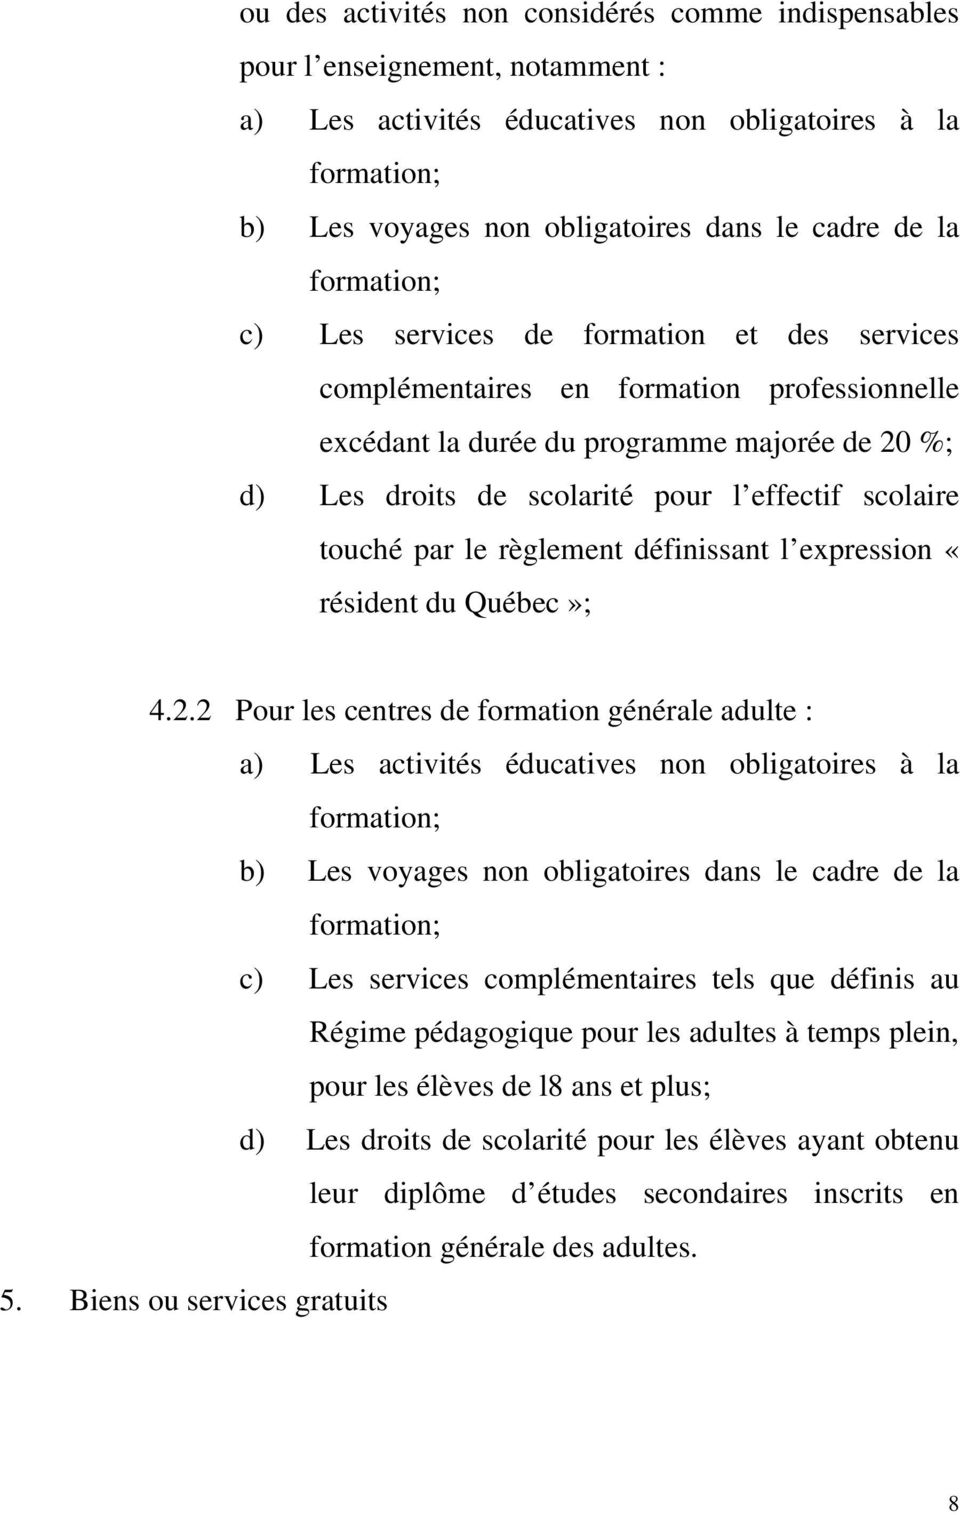 scolaire touché par le règlement définissant l expression «résident du Québec»; 4.2.